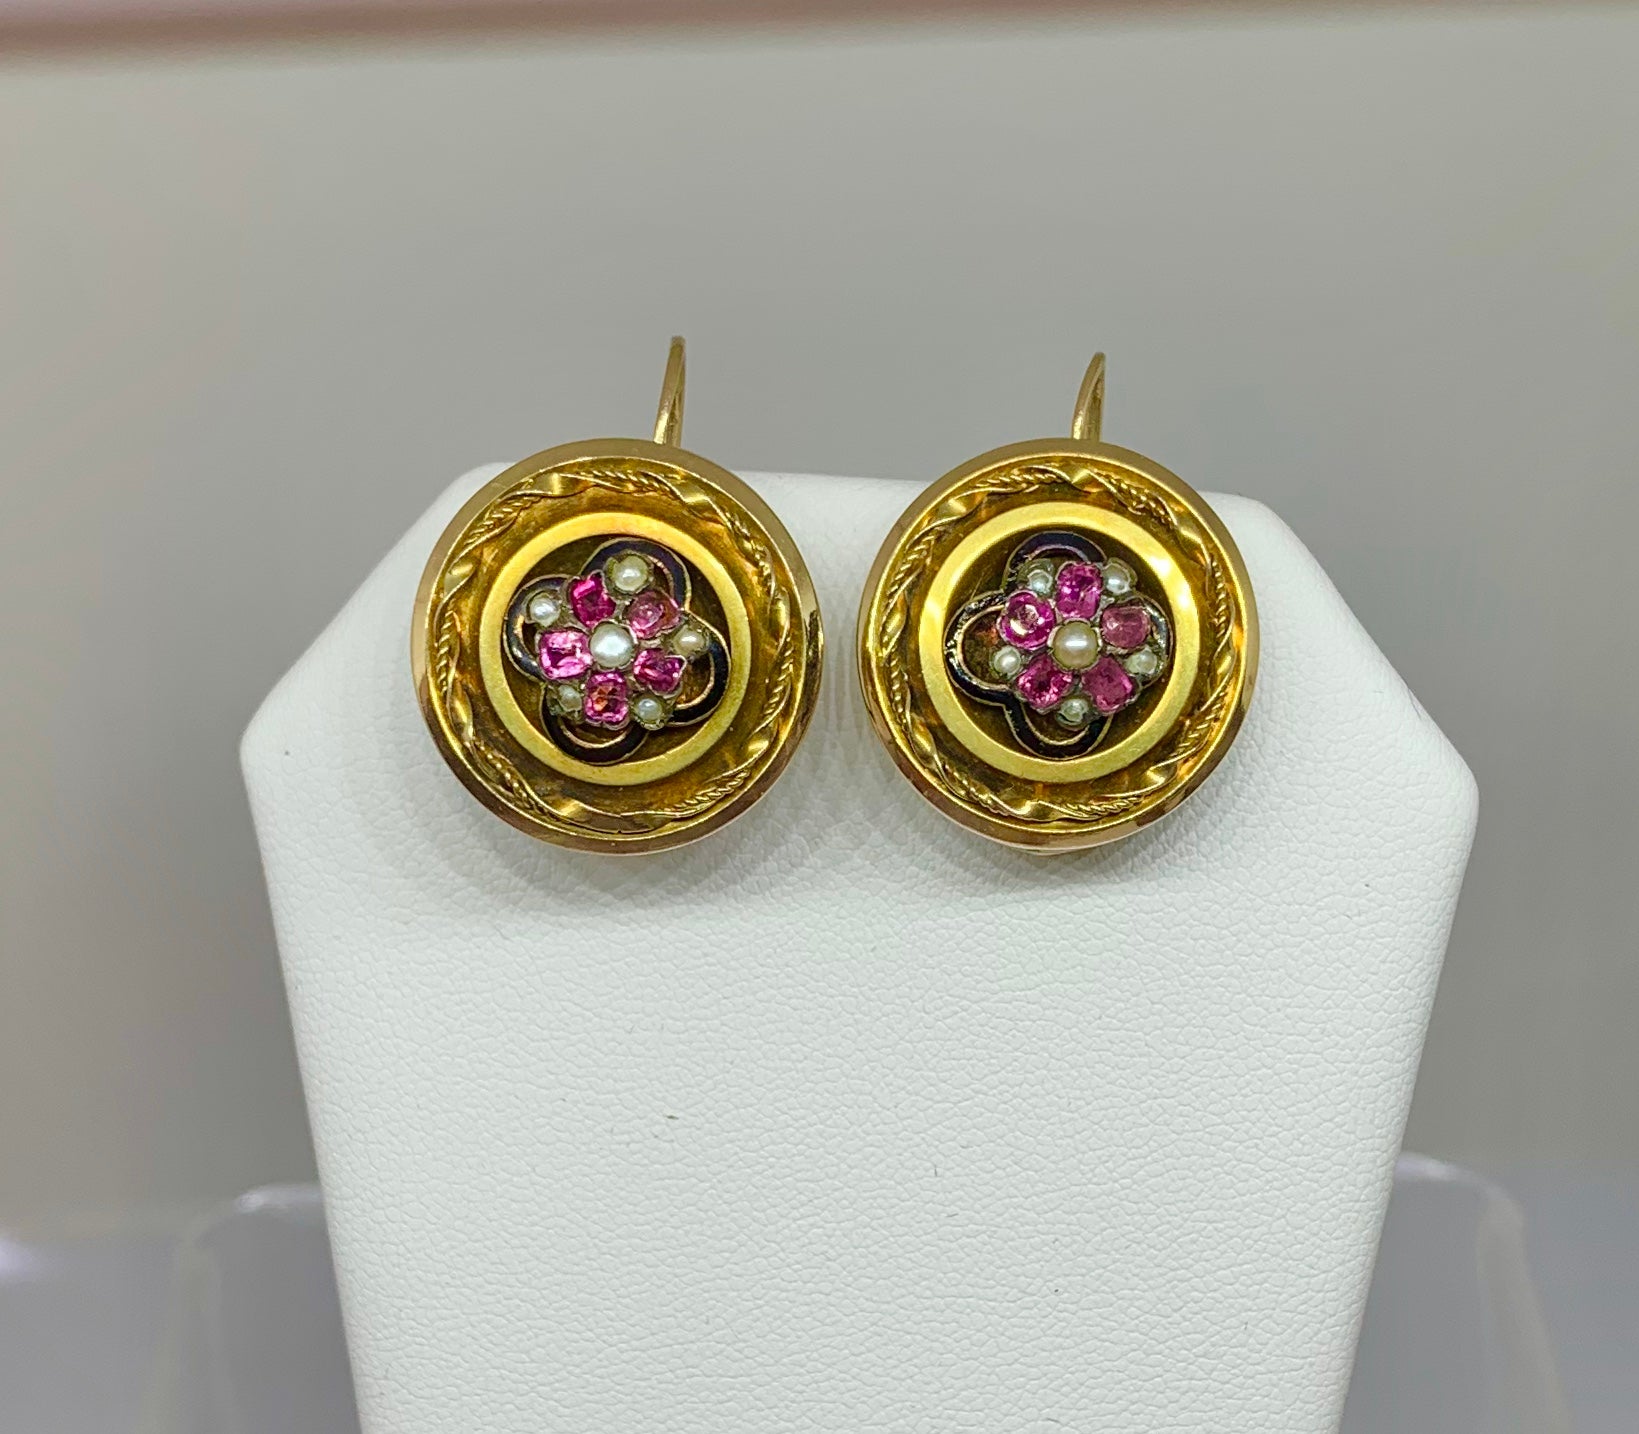 Es handelt sich um ein seltenes Paar antiker viktorianischer Rubin- und Perlen-Ohrringe mit Blumenmotiv aus 14 Karat Gold.  Sie haben ein außergewöhnliches Design mit einem zentralen Cluster aus Rubinen und Perlen.  Die Edelsteine erzeugen ein